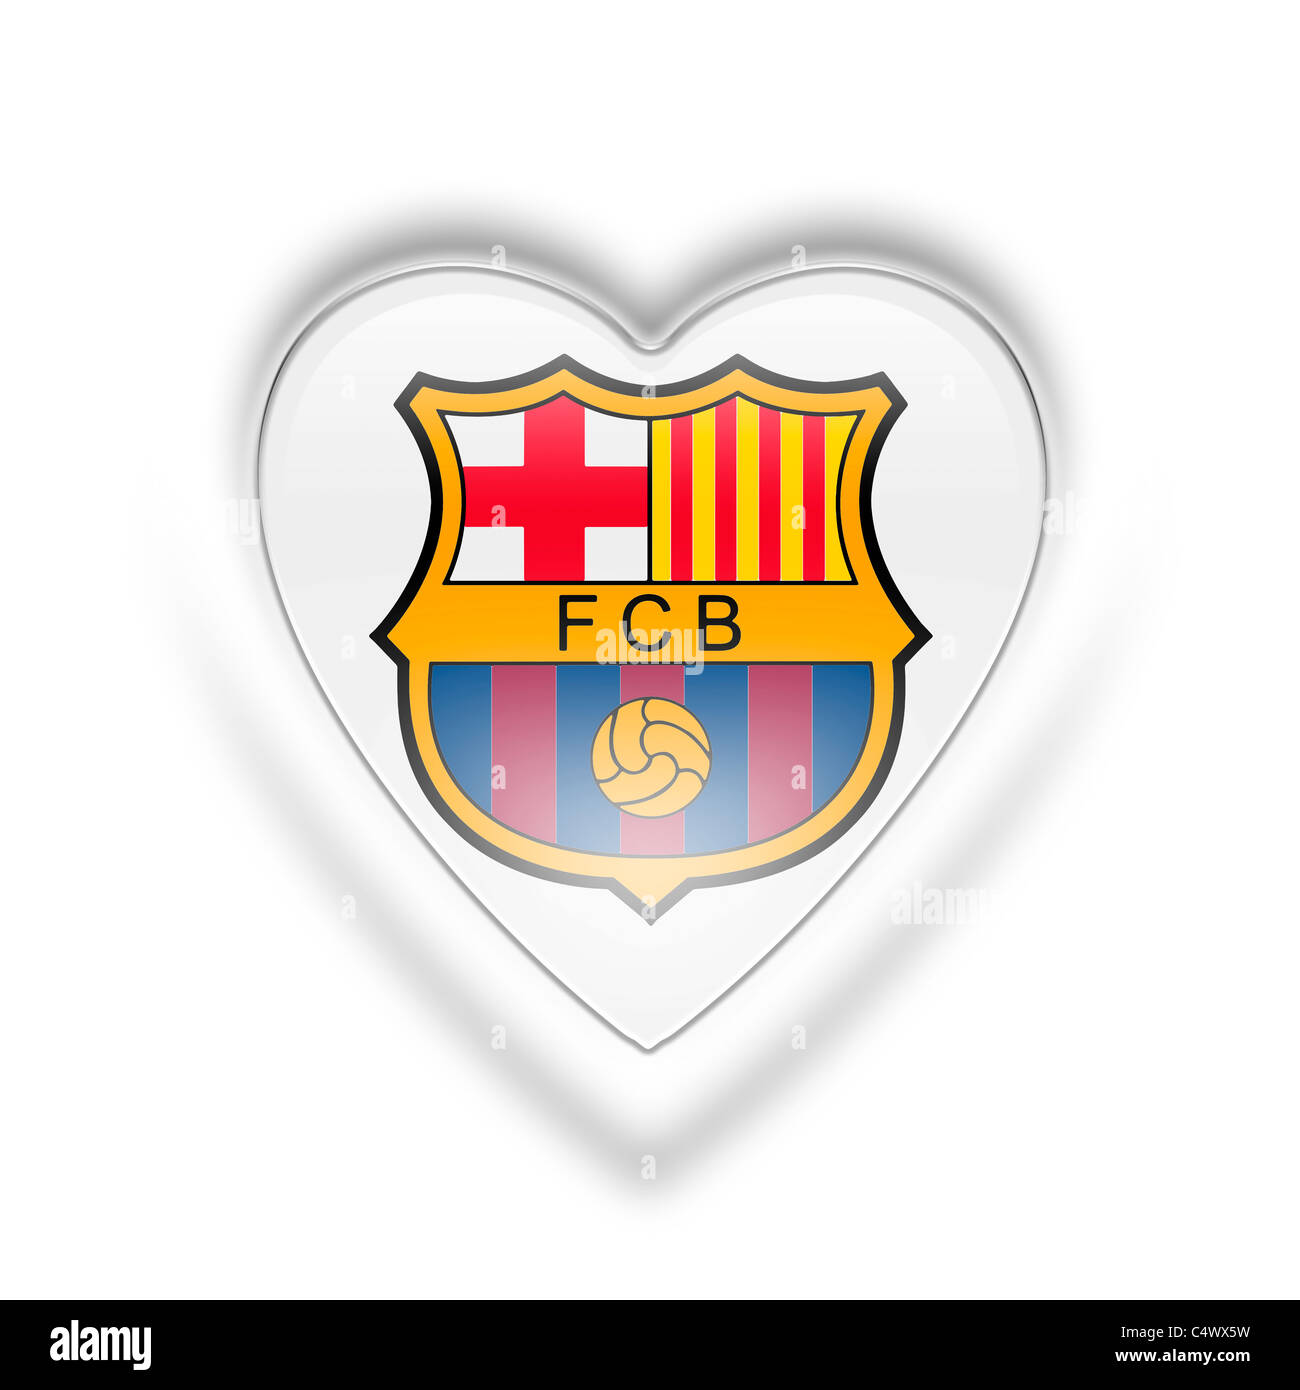 F.c.barcelone logo le symbole du drapeau Photo Stock - Alamy